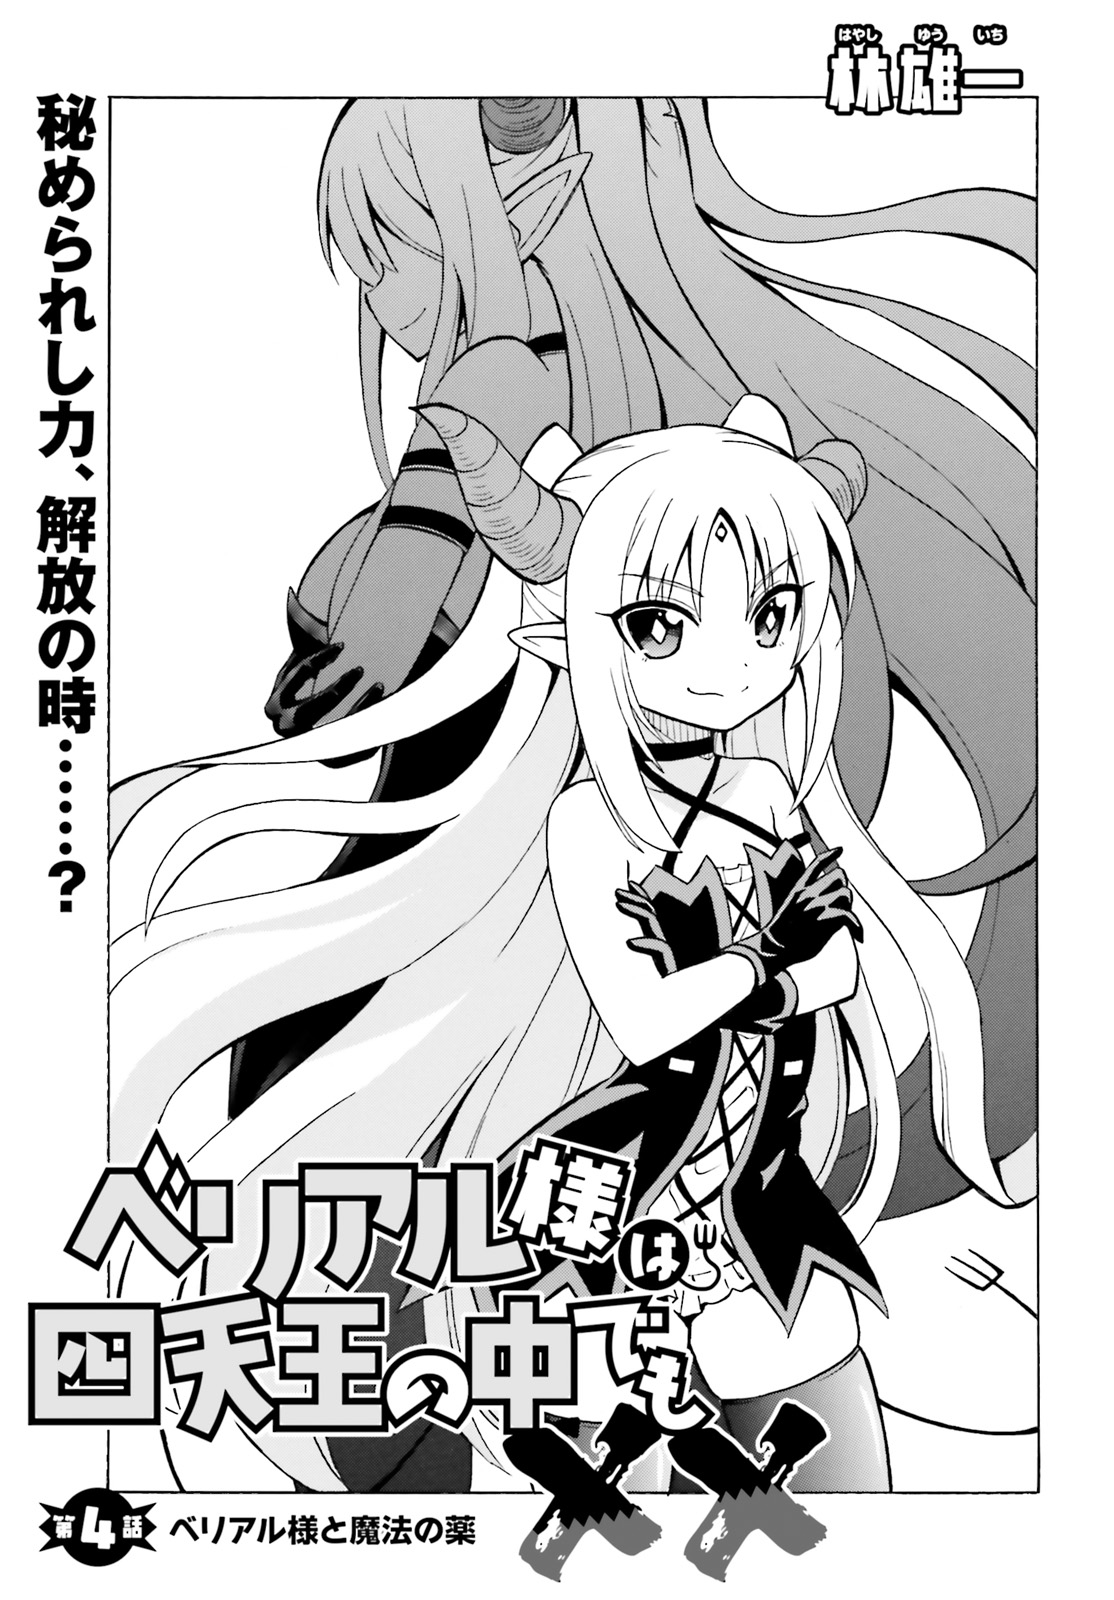 Beriaru-sama wa Shitenno no Naka Demo × × - Chapter 4 - Page 1